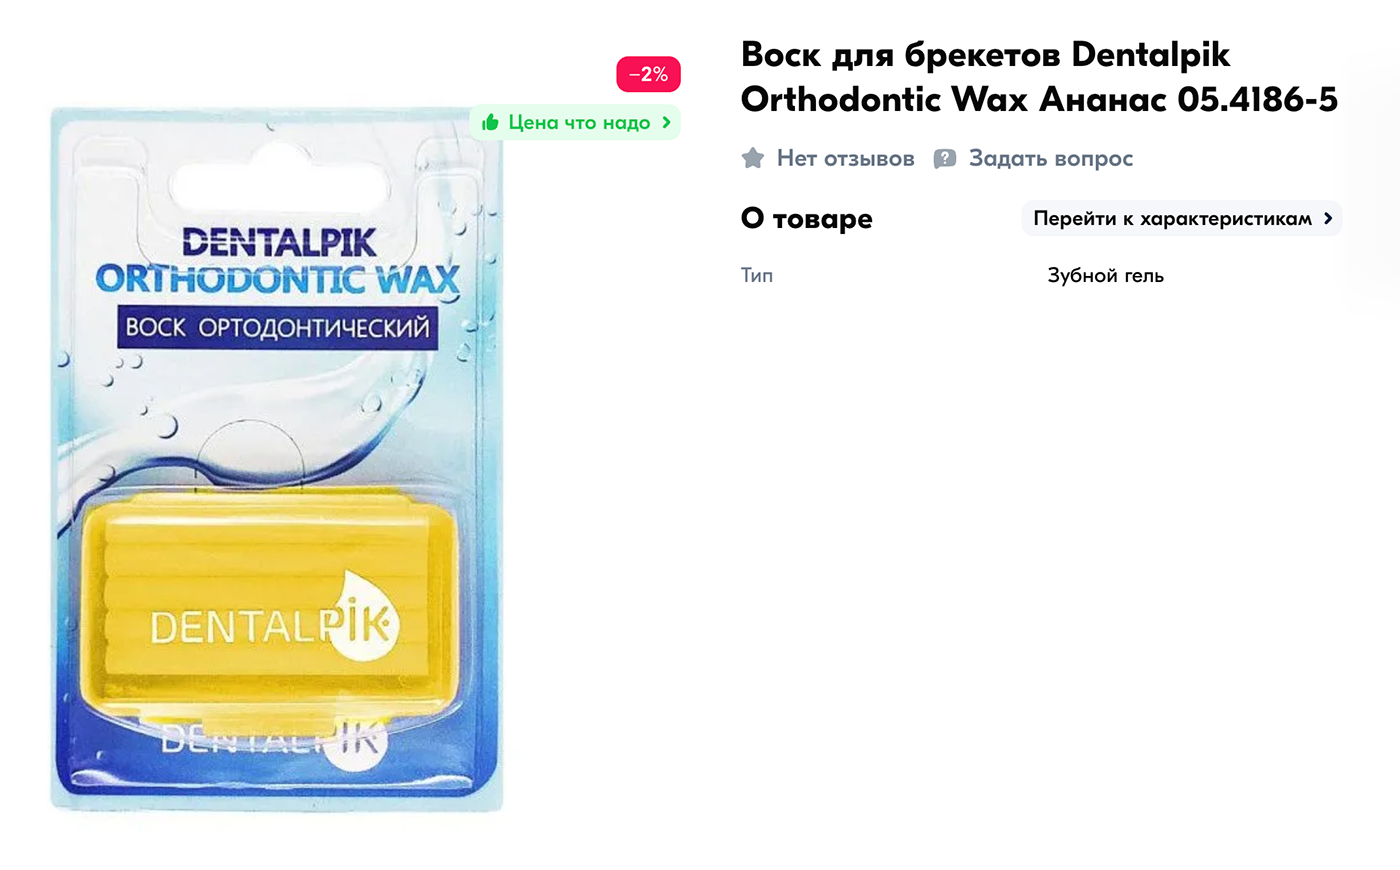 Воск для брекетов стоит около 300 ₽. Источник: ozon.ru